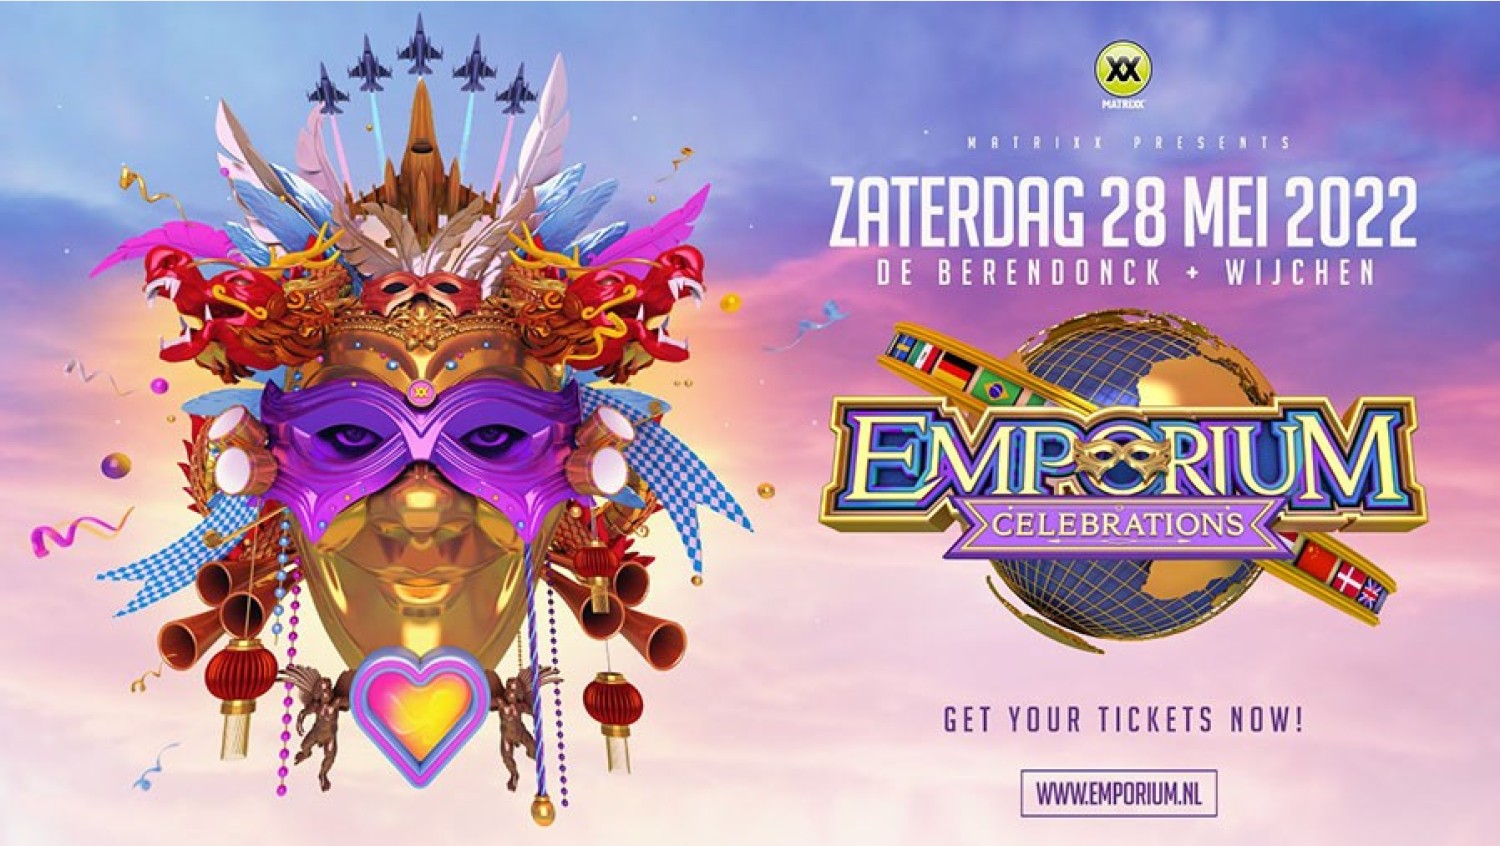 Party nieuws: Nieuwe datum Emporium Festival: 28 mei 2022